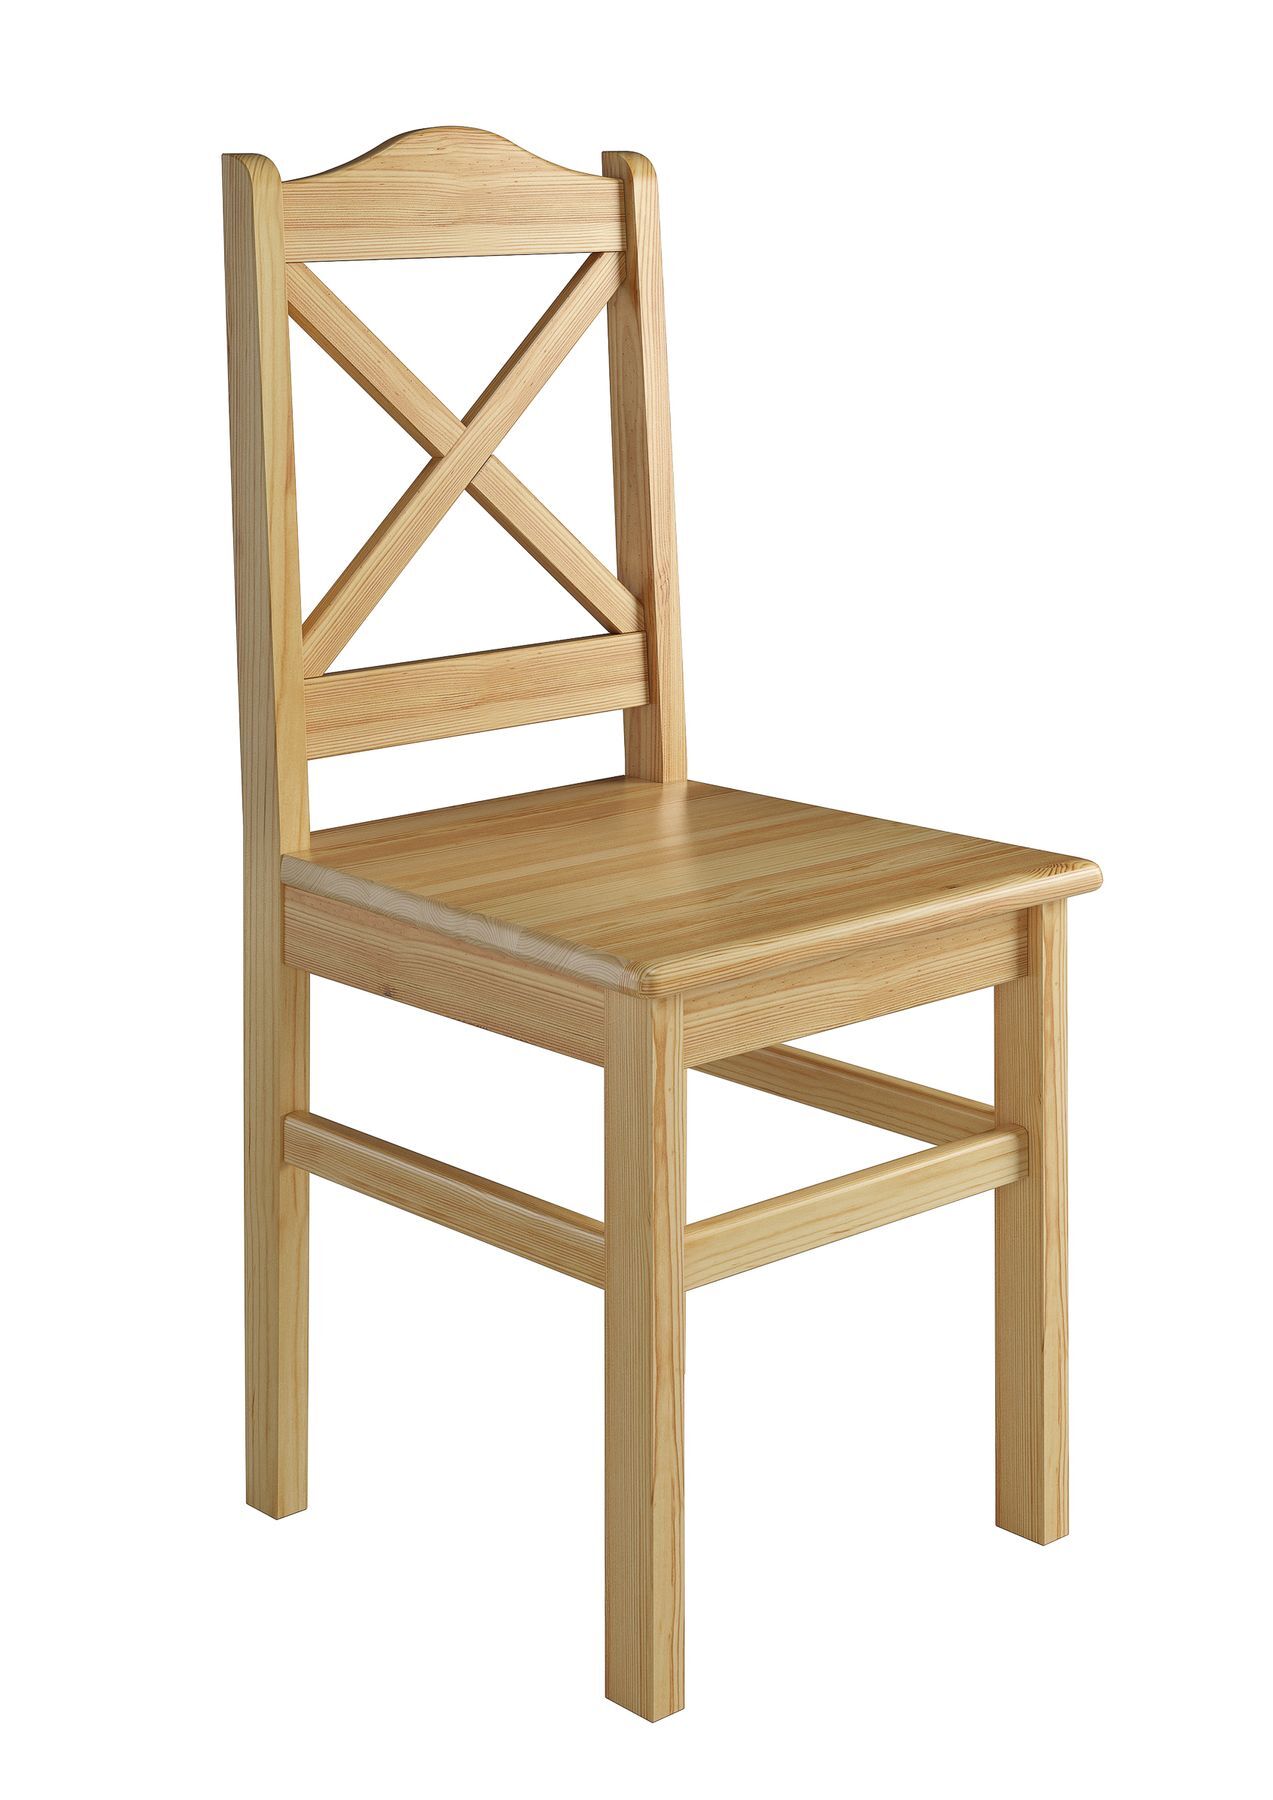 Stabiler Holzstuhl aus massiver Kiefer, Modell 20, klar lackiert, traditionelles Design - Kreuz in Stuhllehne mit geschwungenen Abschluss